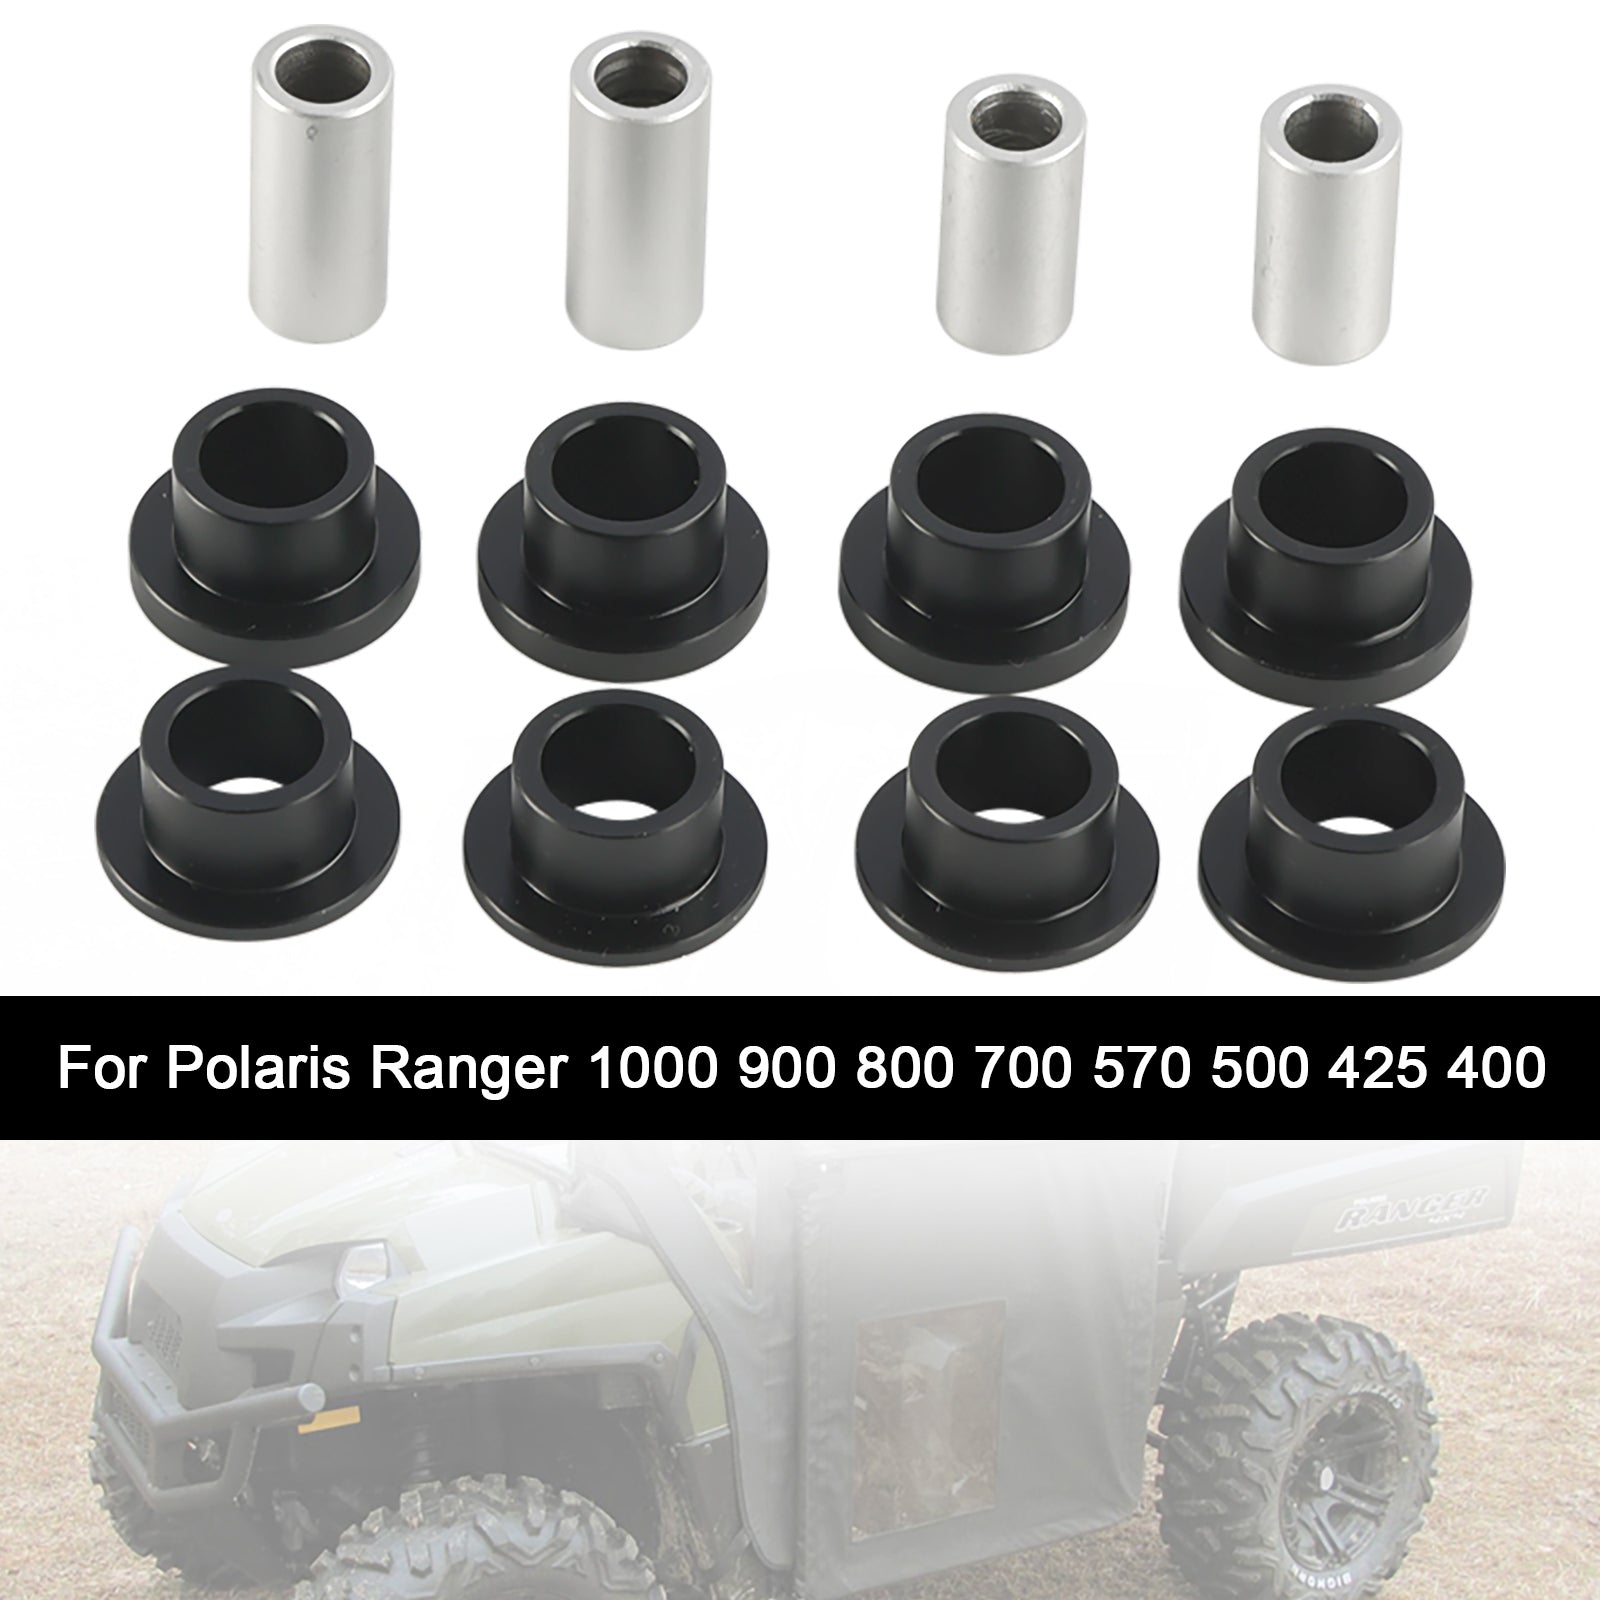 Polaris Ranger 1000 900 800 700 570 Shock Absorber Bushings 7042078 7042333